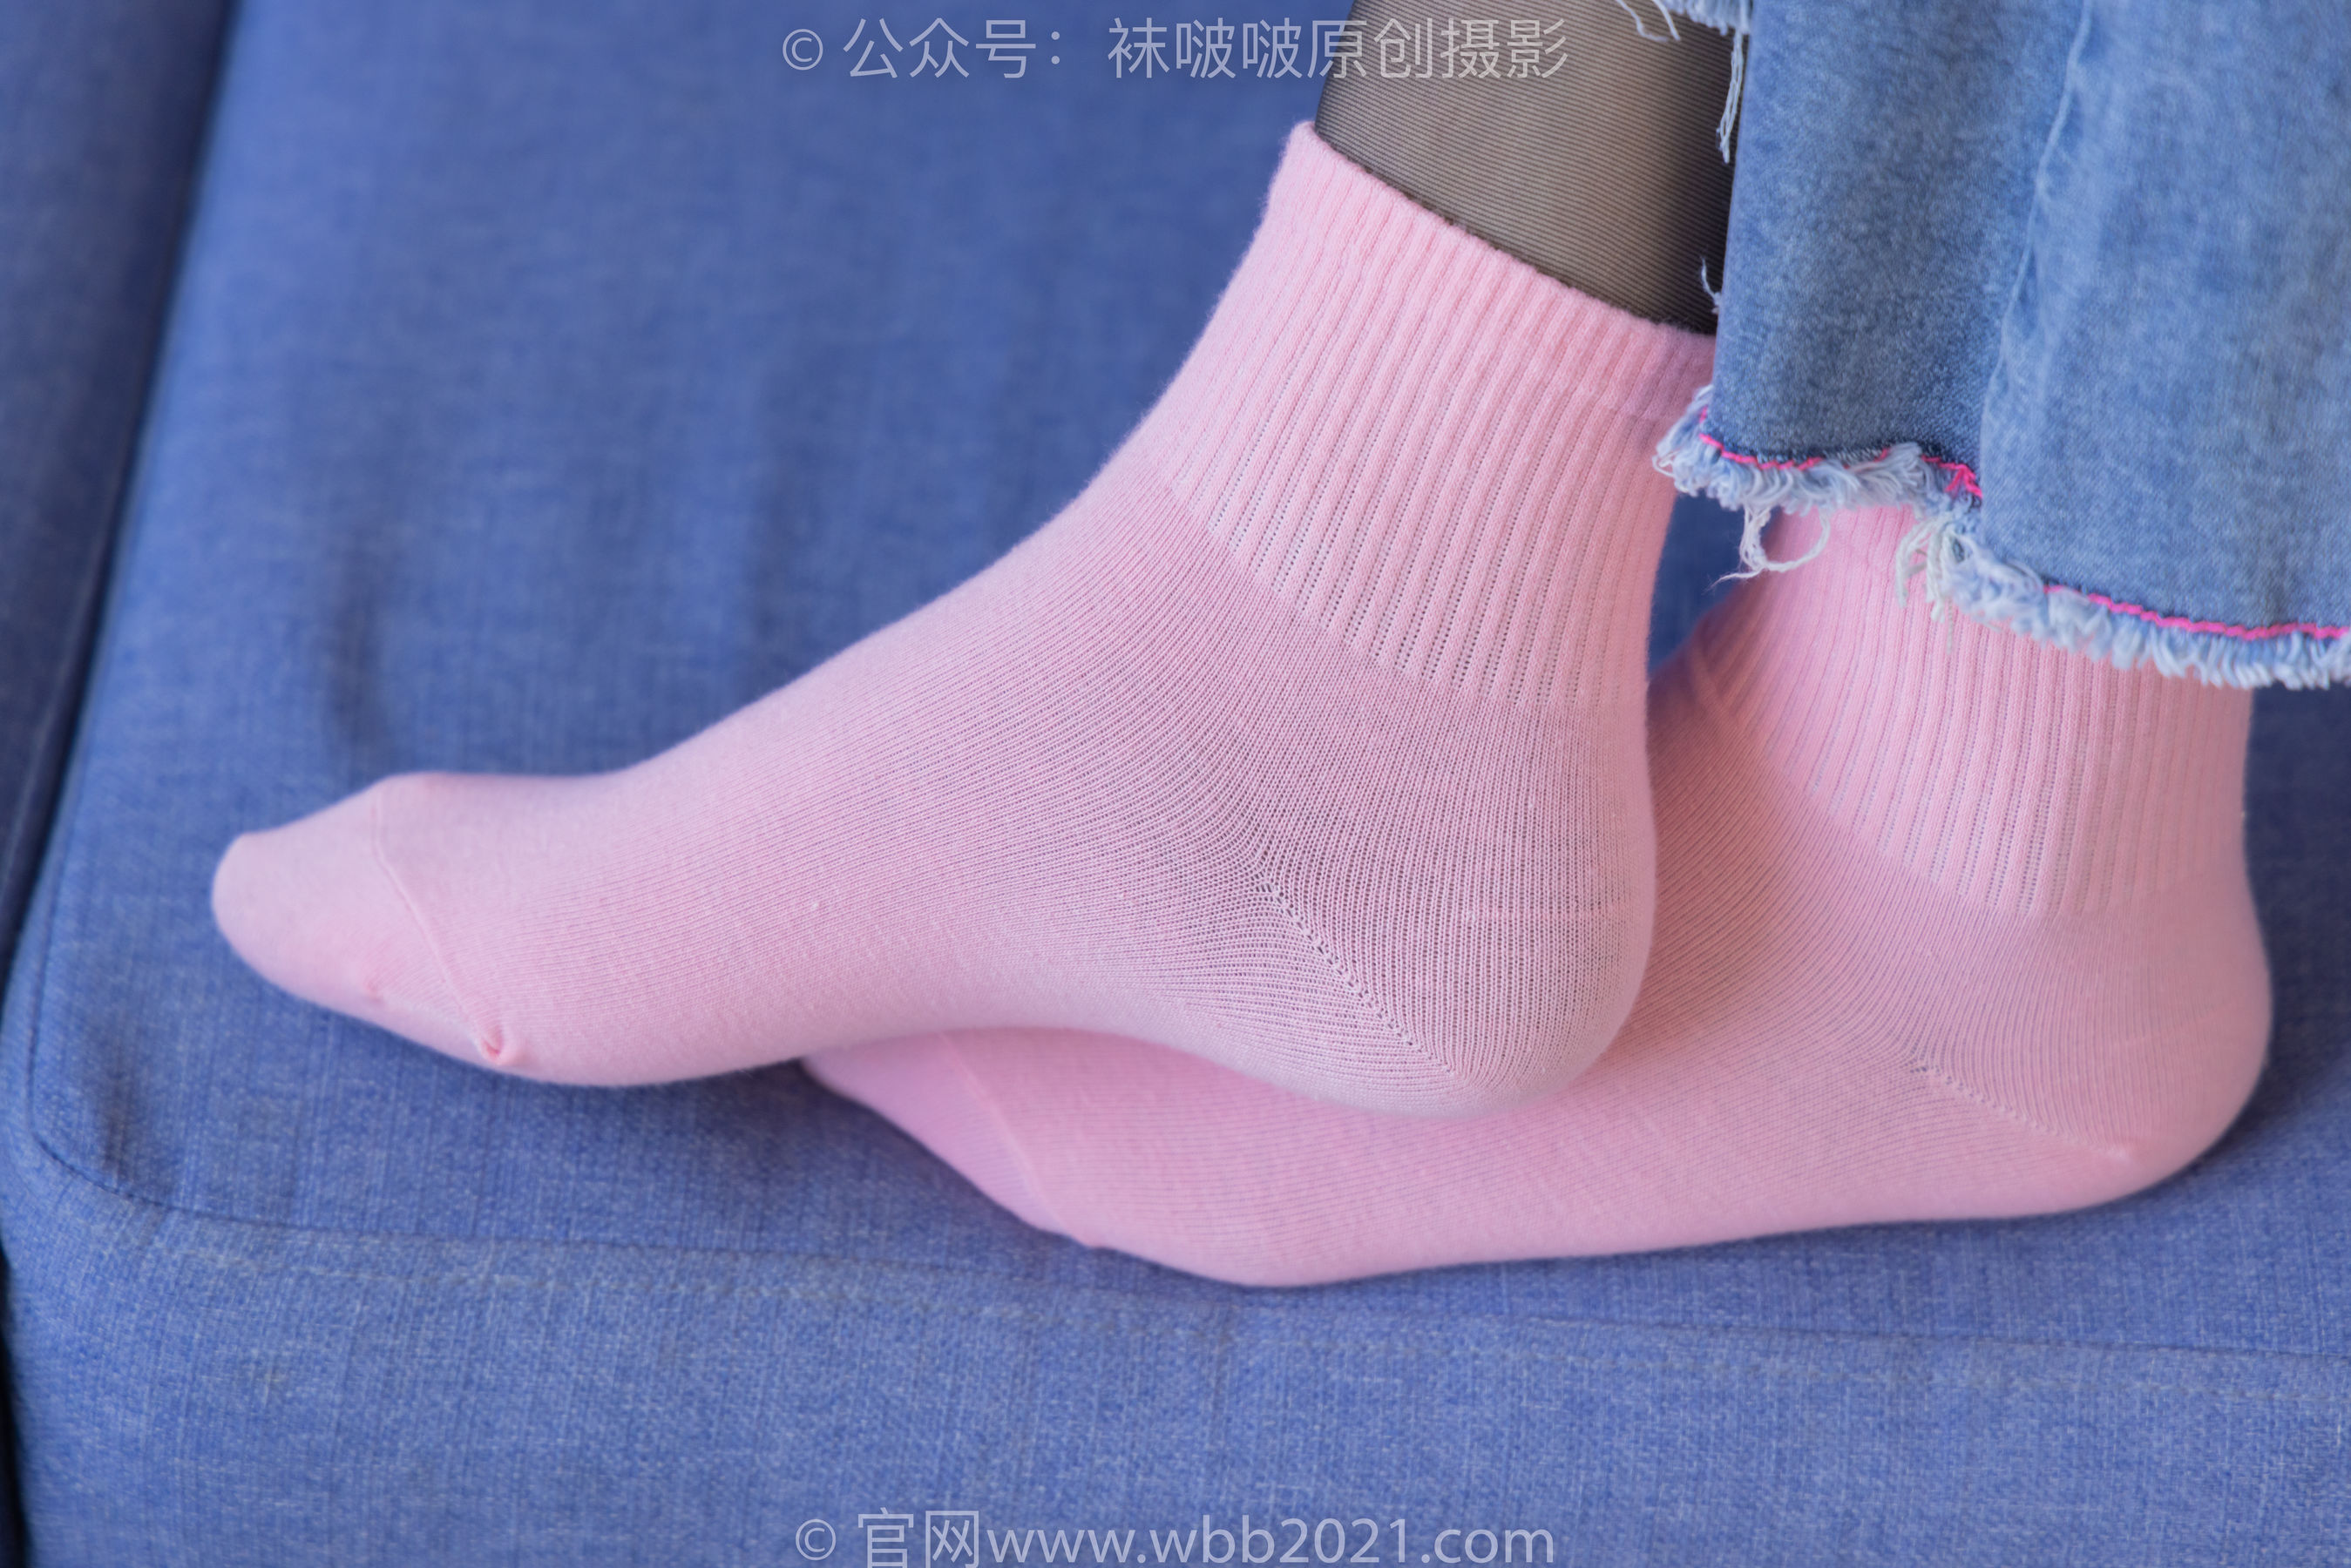 BoBoSocks袜啵啵 No.317 小甜豆 -运动鞋、可拆卸牛仔裤、粉色棉袜、黑丝、裤里丝/(140P)